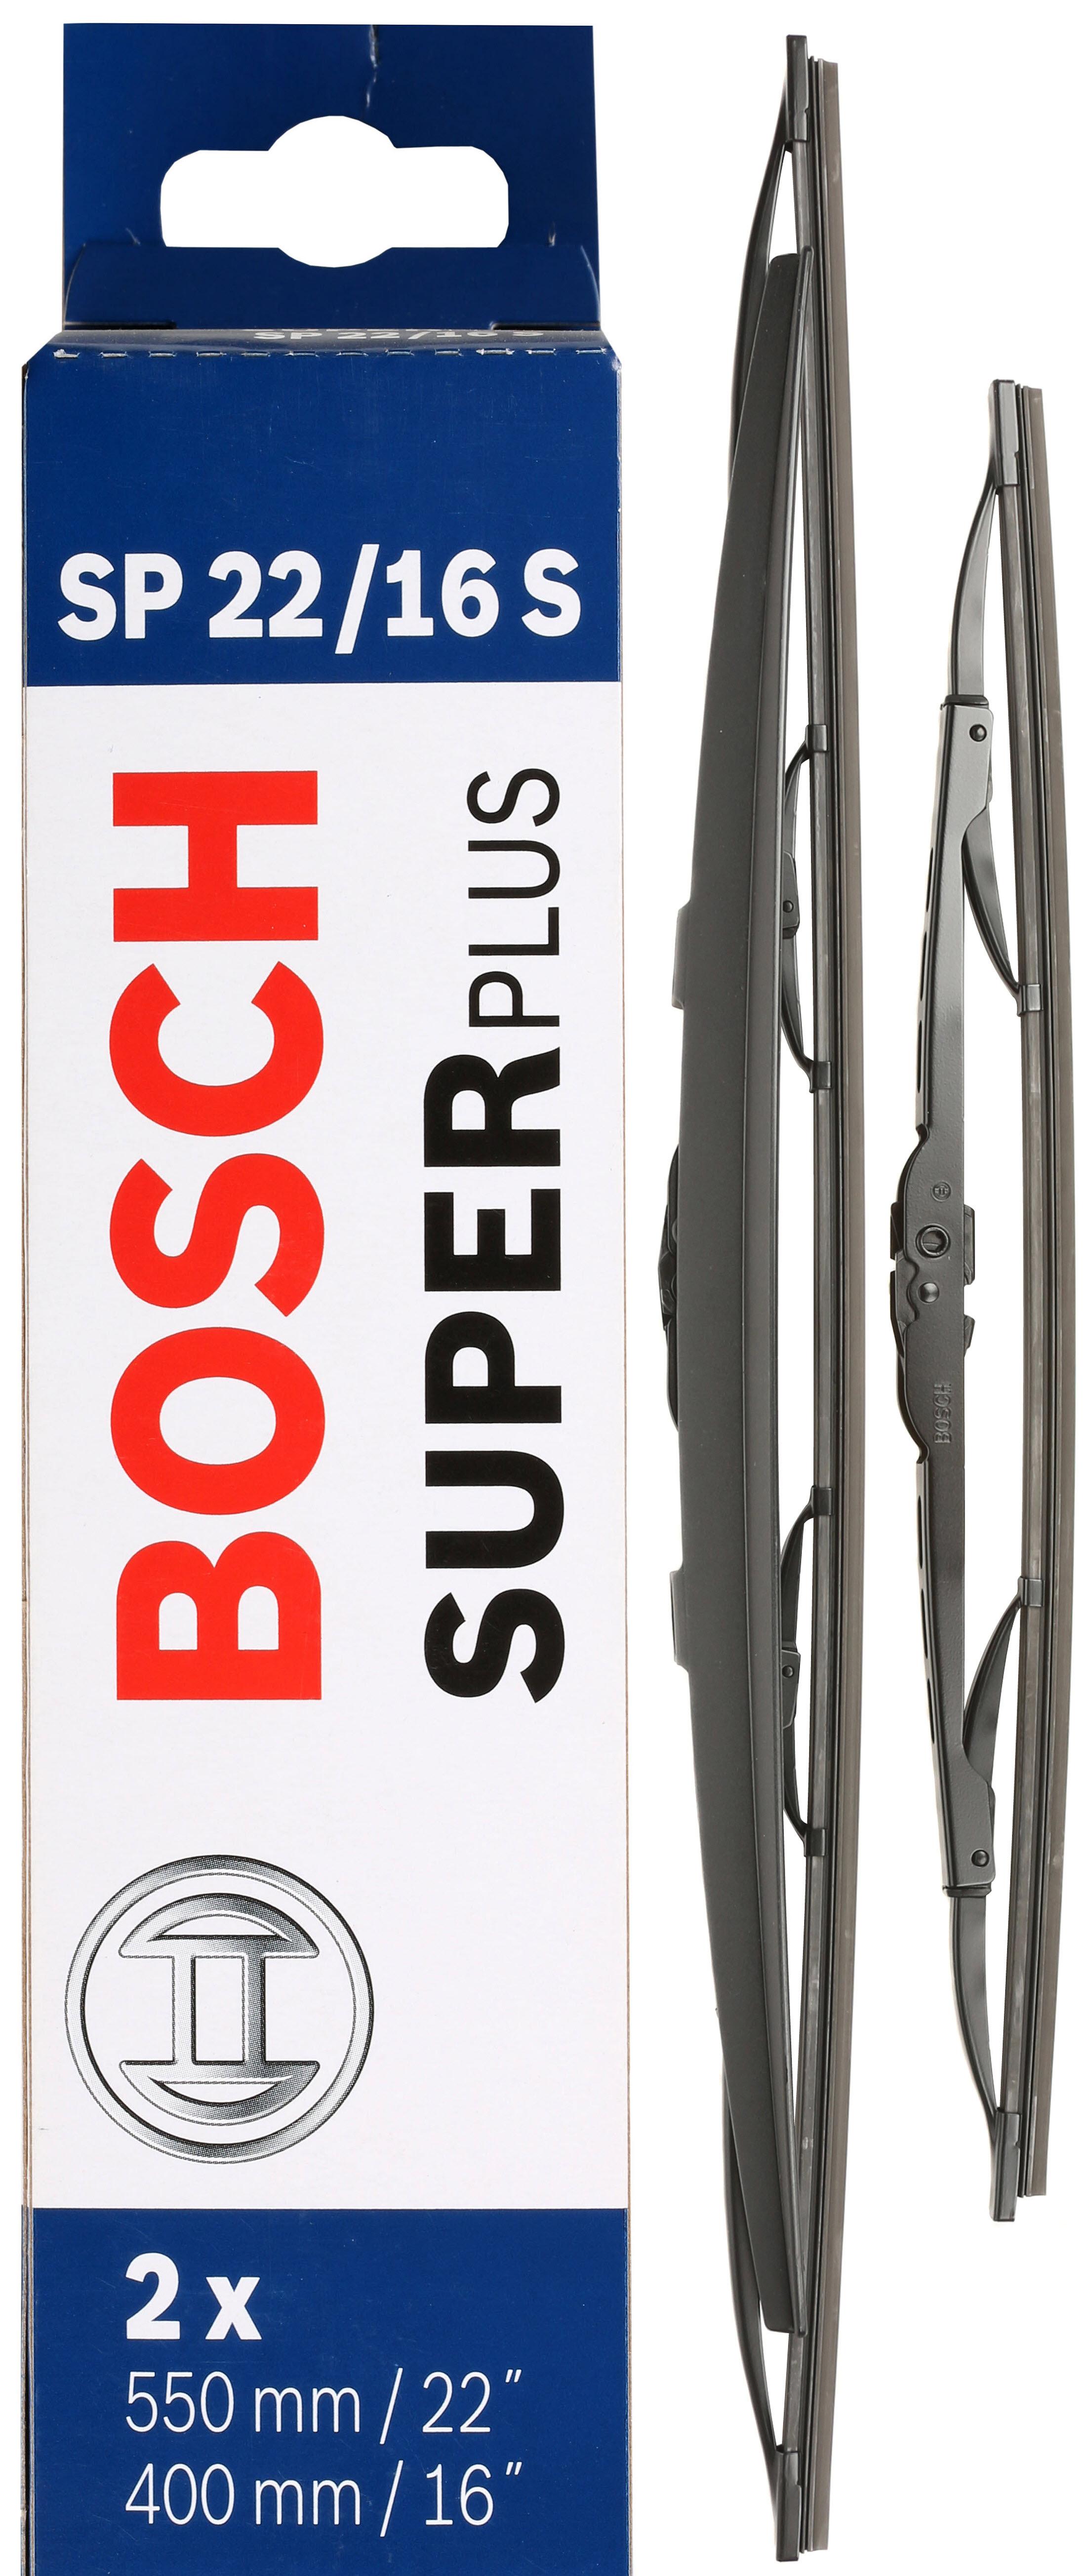 Bosch Sp22/16S Wiper Blades - Front Pair